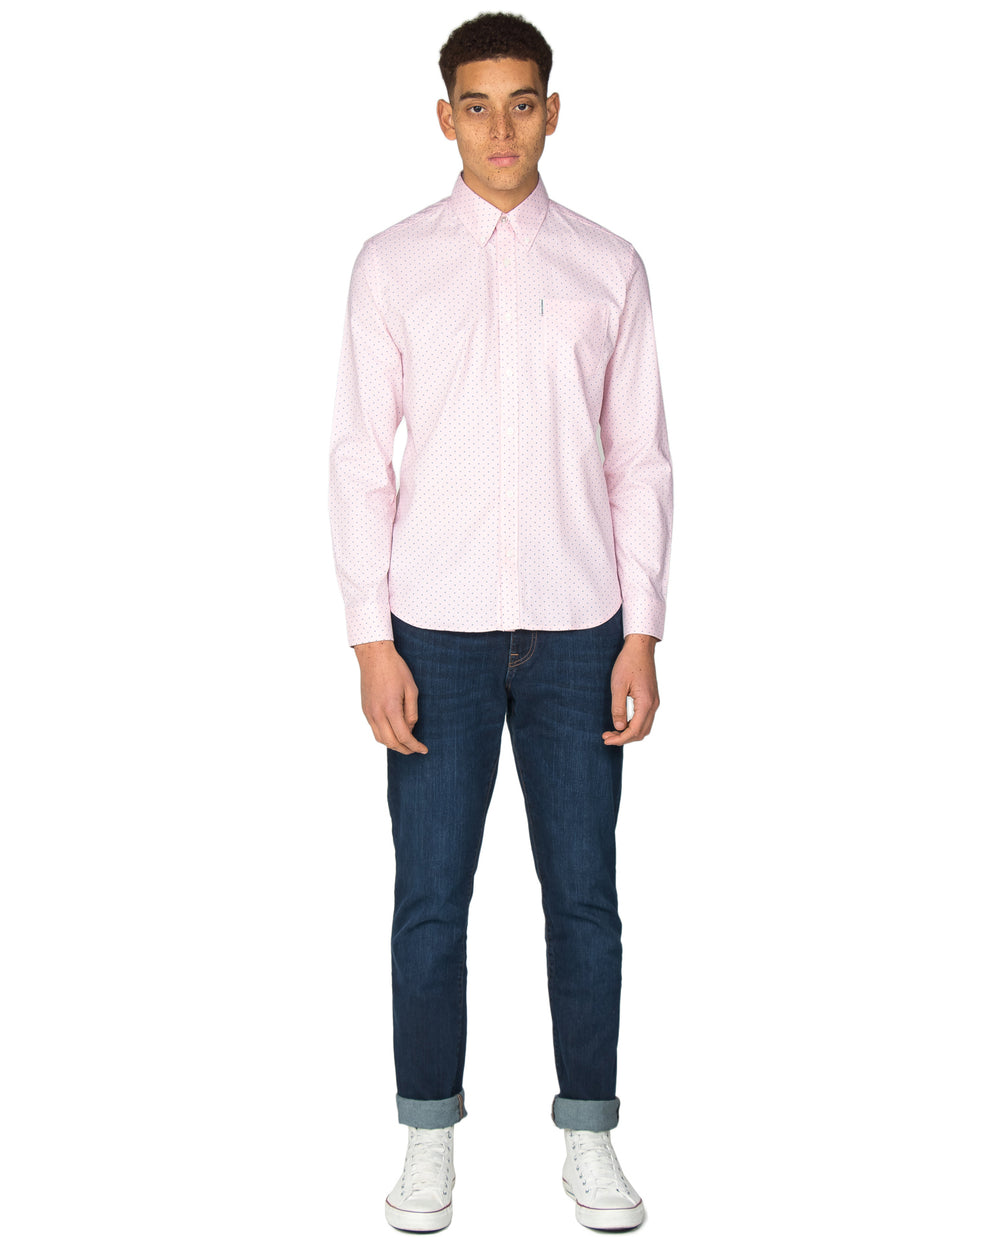 Long-Sleeve Polka Dot Oxford Shirt - Pink